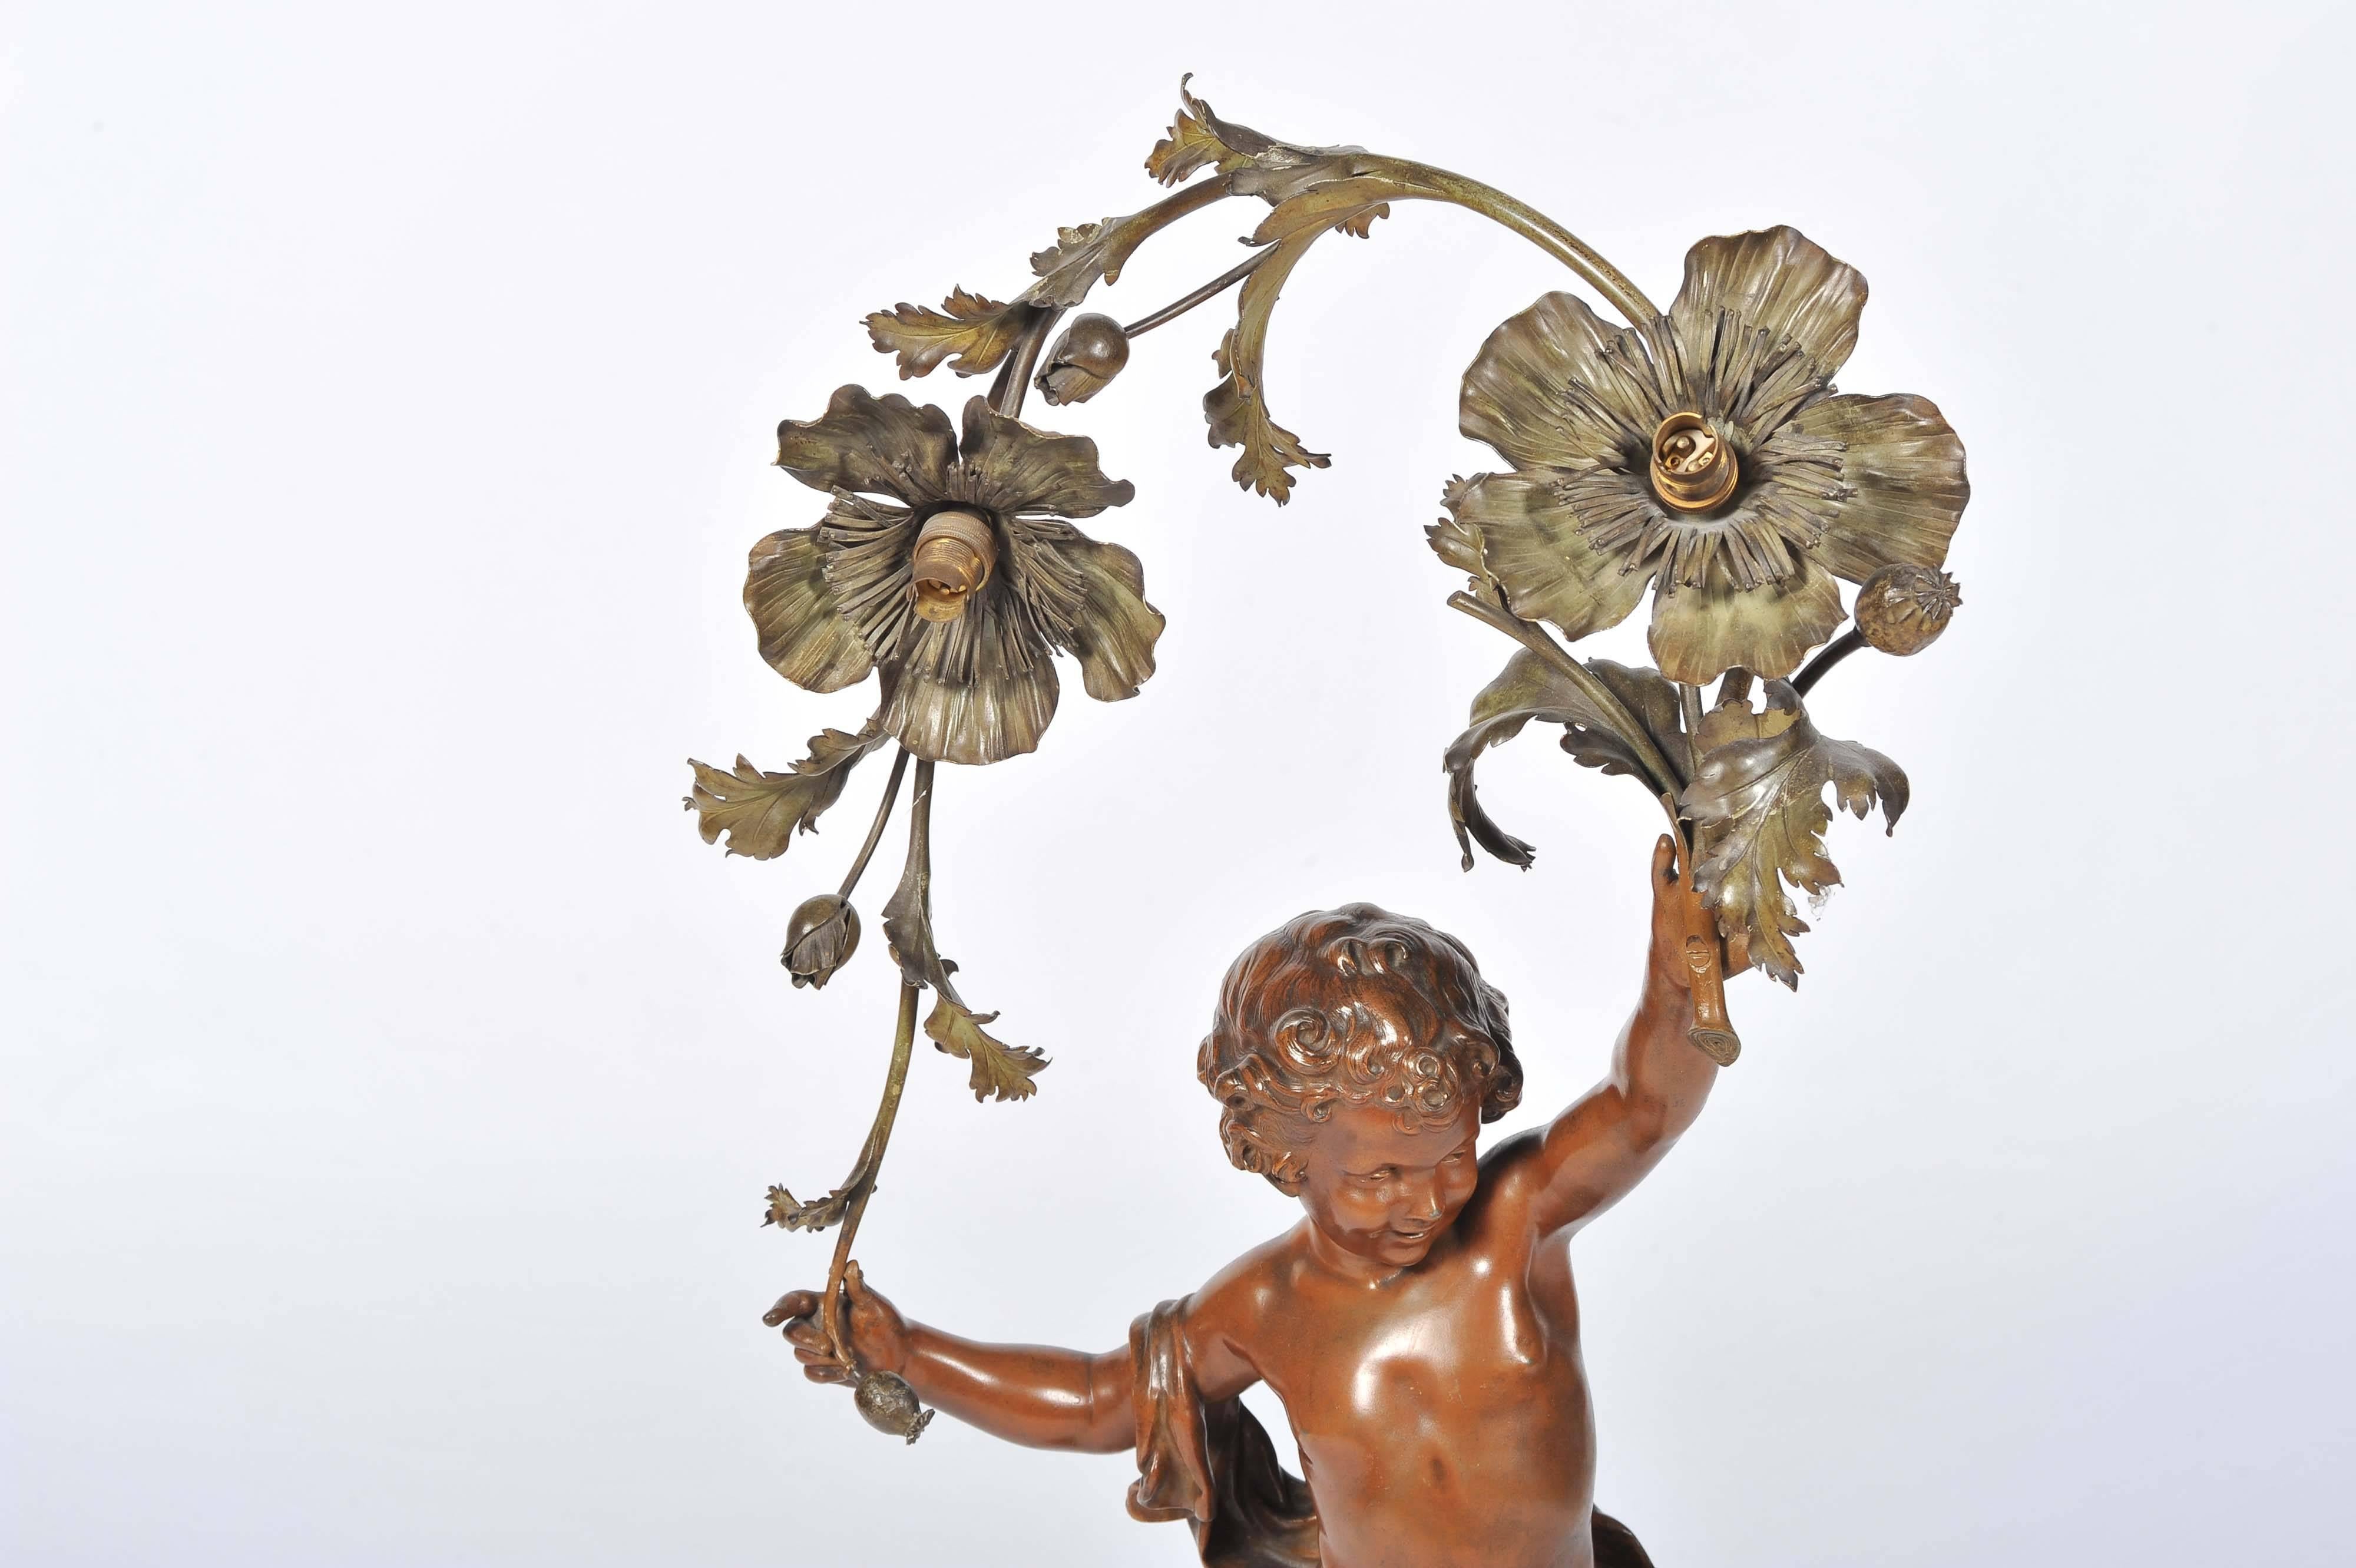 Eine bezaubernde Bronzestatue aus dem 19. Jahrhundert, die ein Kind darstellt, das Blumen über dem Kopf hält und auf einem Sockel aus Rougemarmor steht.